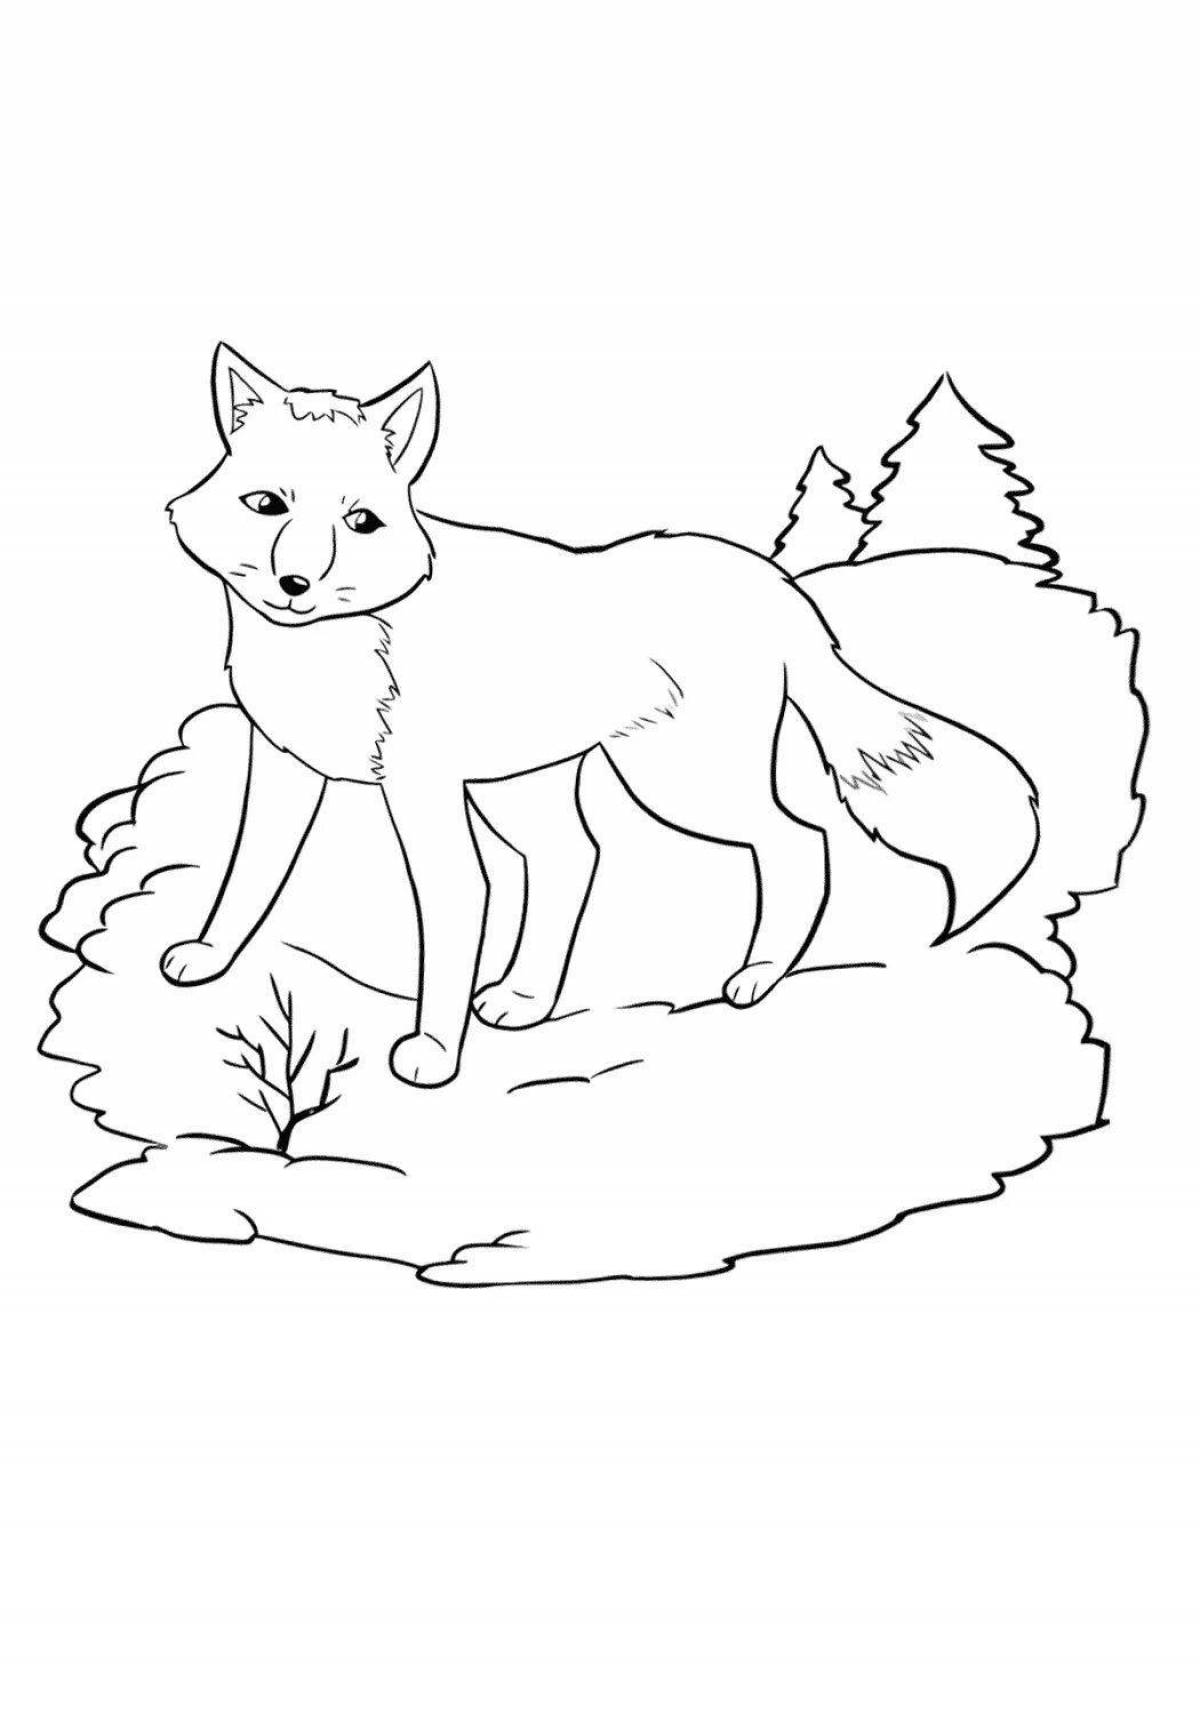 Fox in winter #4